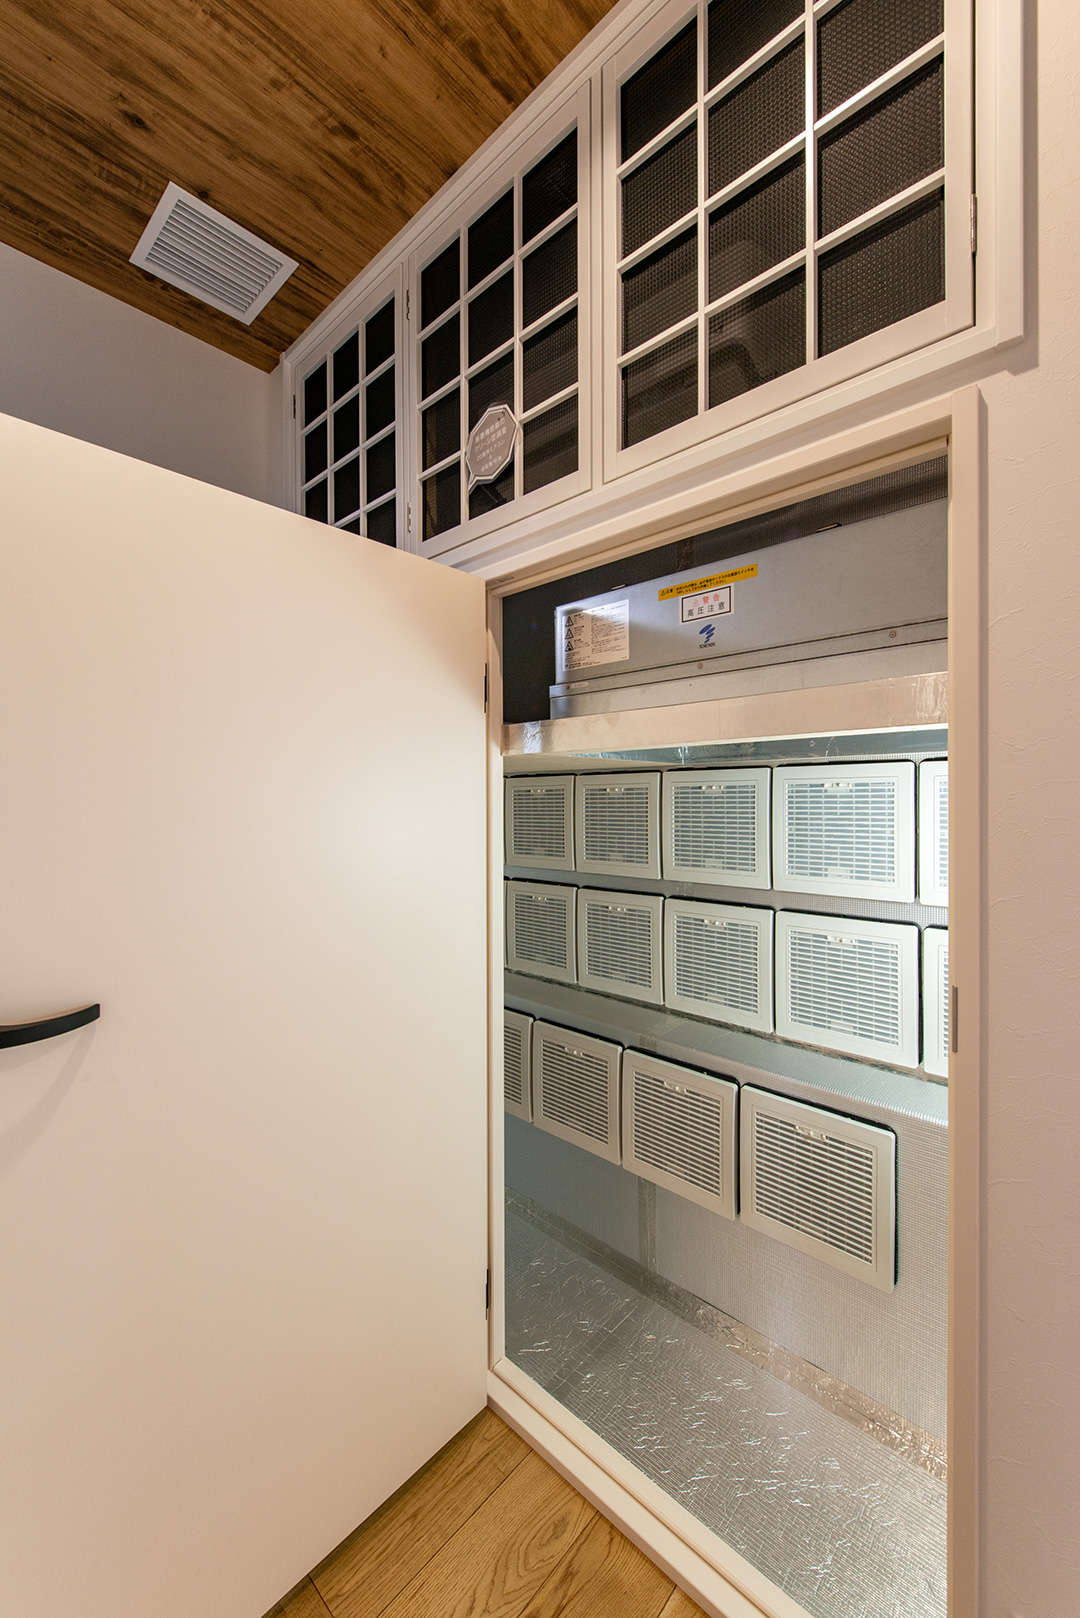 全館空調マッハシステム体感モデルハウスの空調室写真